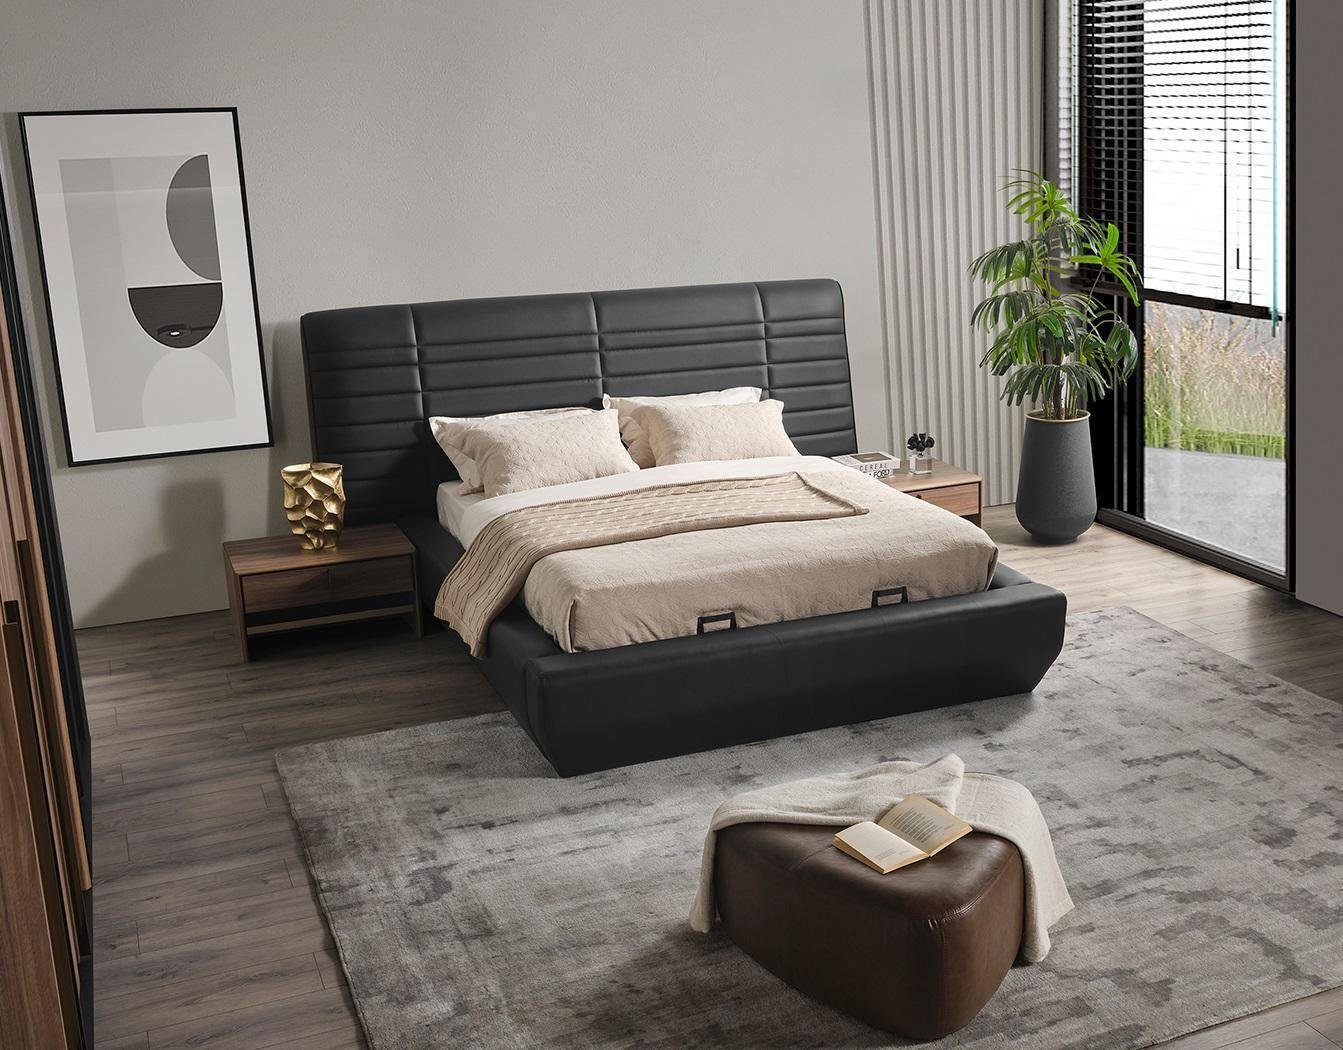 JVmoebel Schlafzimmer-Set Schlafzimmer Set Bett 2x Nachttische schwarz Luxus neu 3tlg Design, Made In Europe